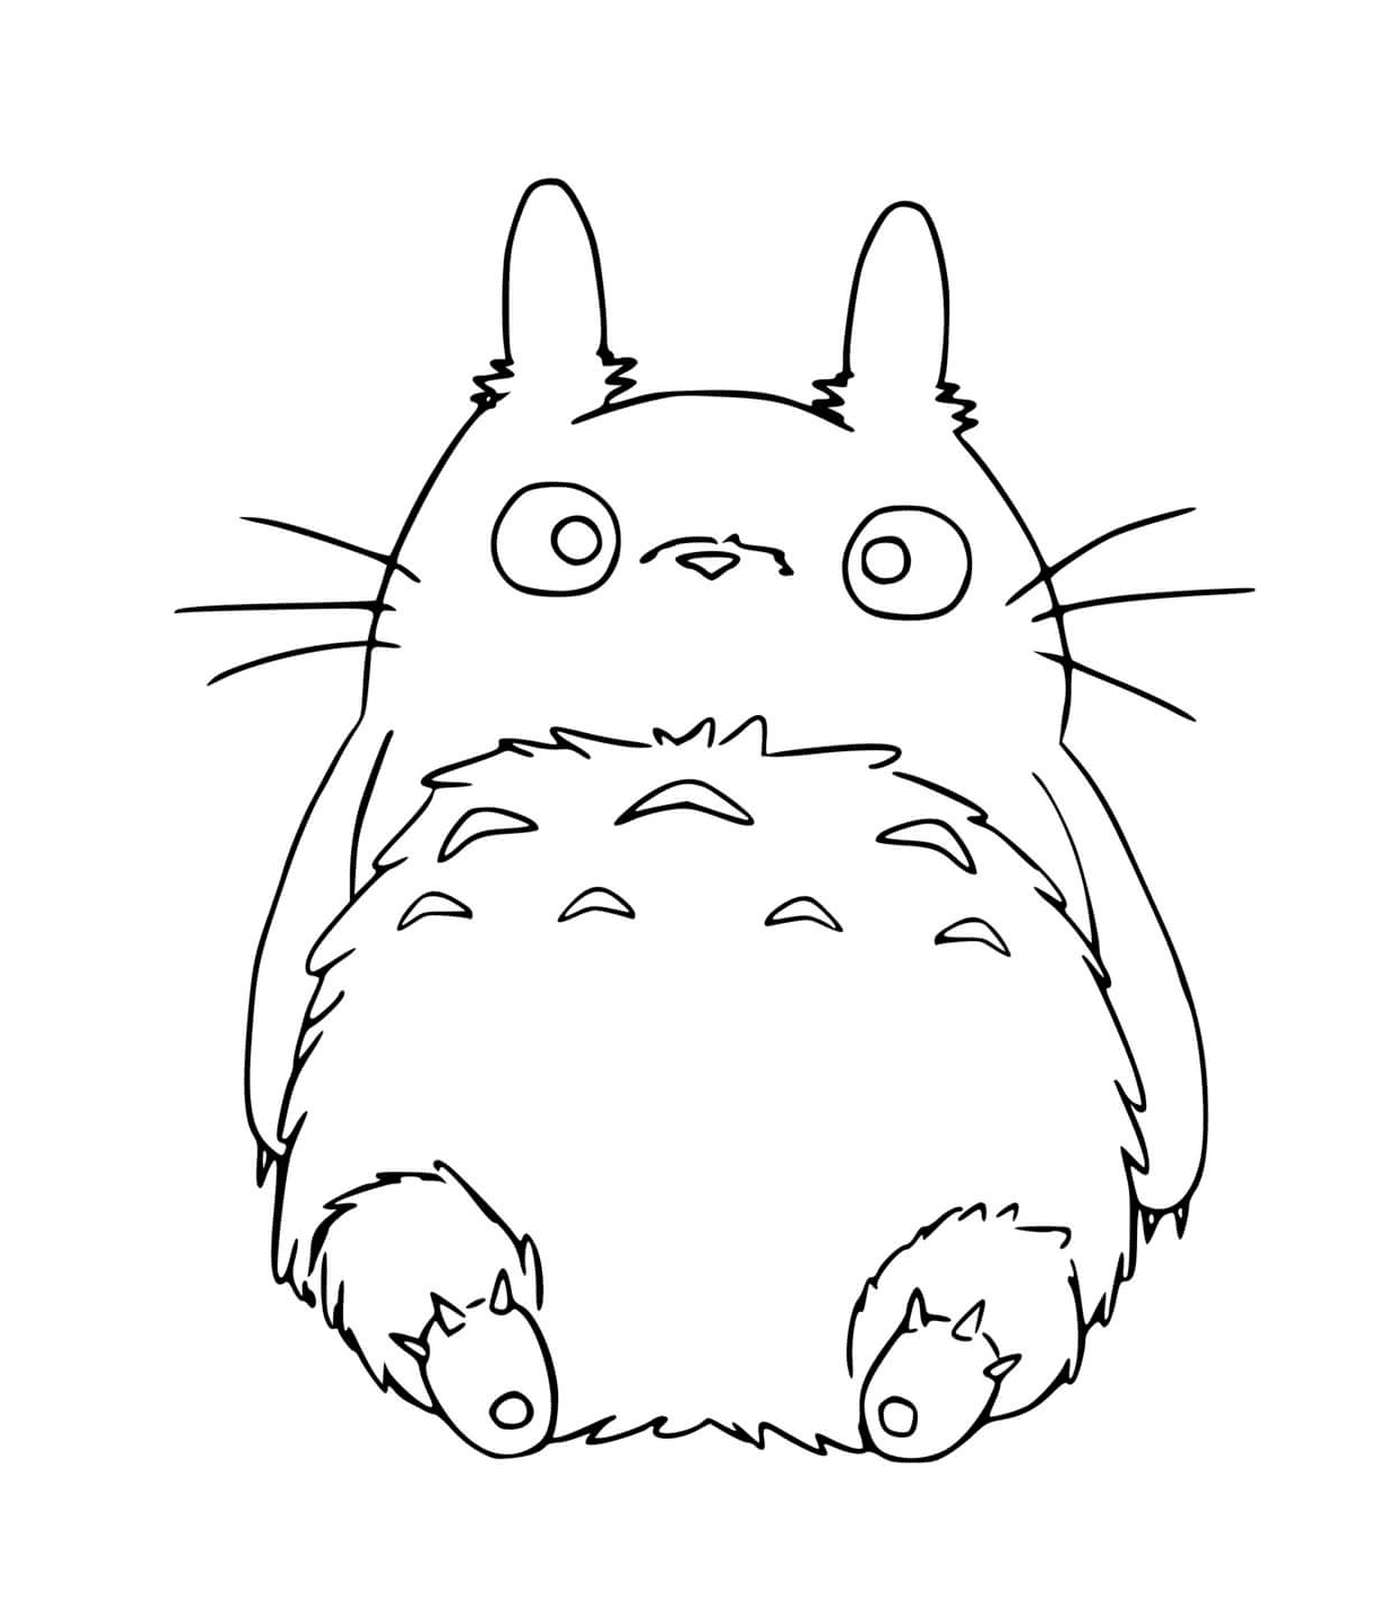  Totoro sitting on the floor 